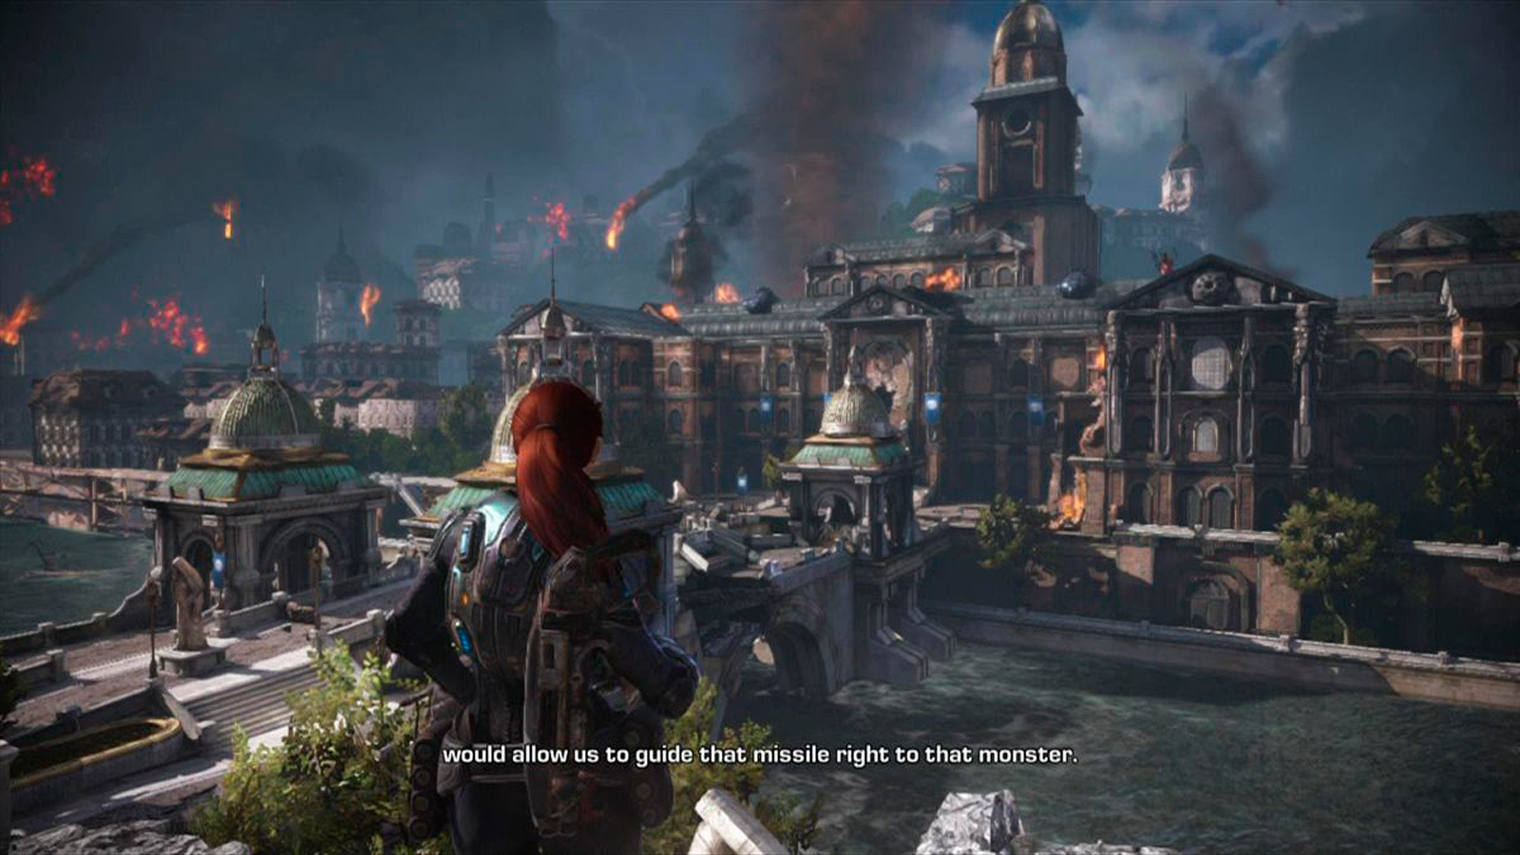 События Judgment происходят сразу после начала войны, поэтому крупные города еще не превратились в руины. Кадр: Xbox Game Studios